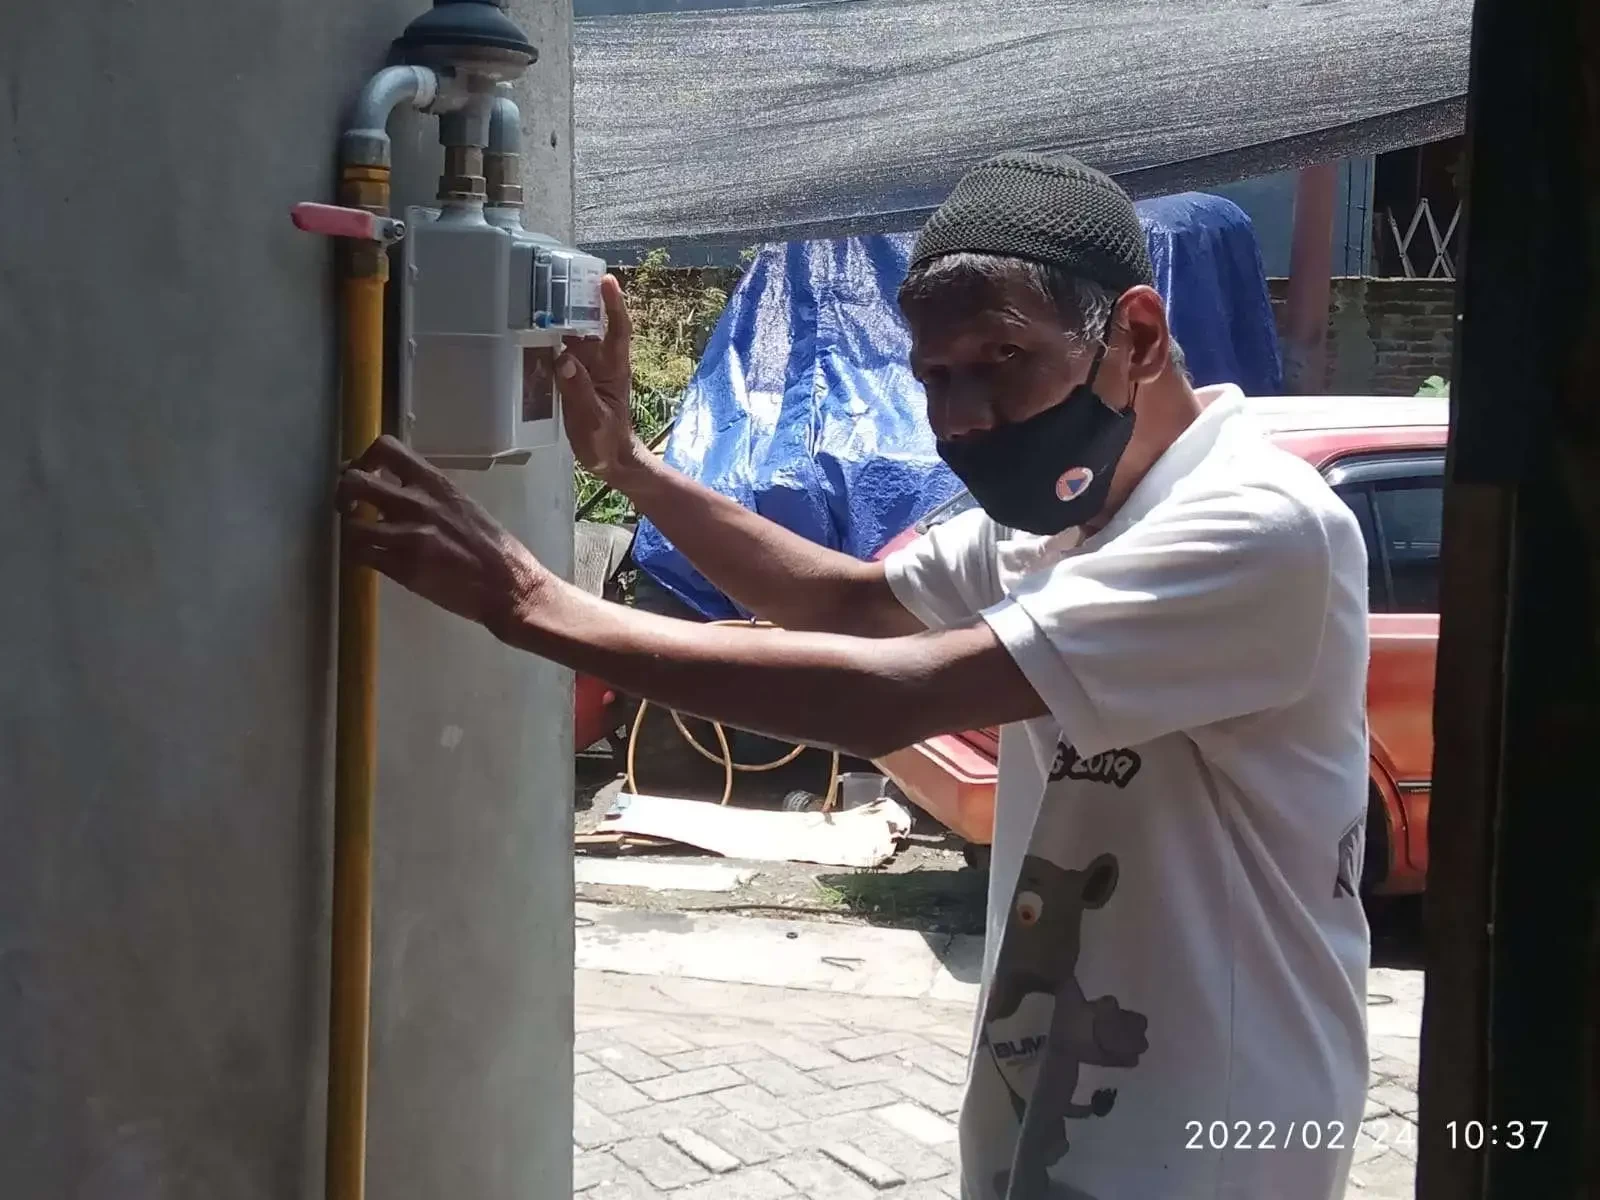 Warga Kelurahan Klangon, Kecamatan Kota Bojonegoro, menunjukkan meteran jaringan gas alam rumah tangga di rumahnya. (Foto: dokumentasi/Ngopibareng.id)